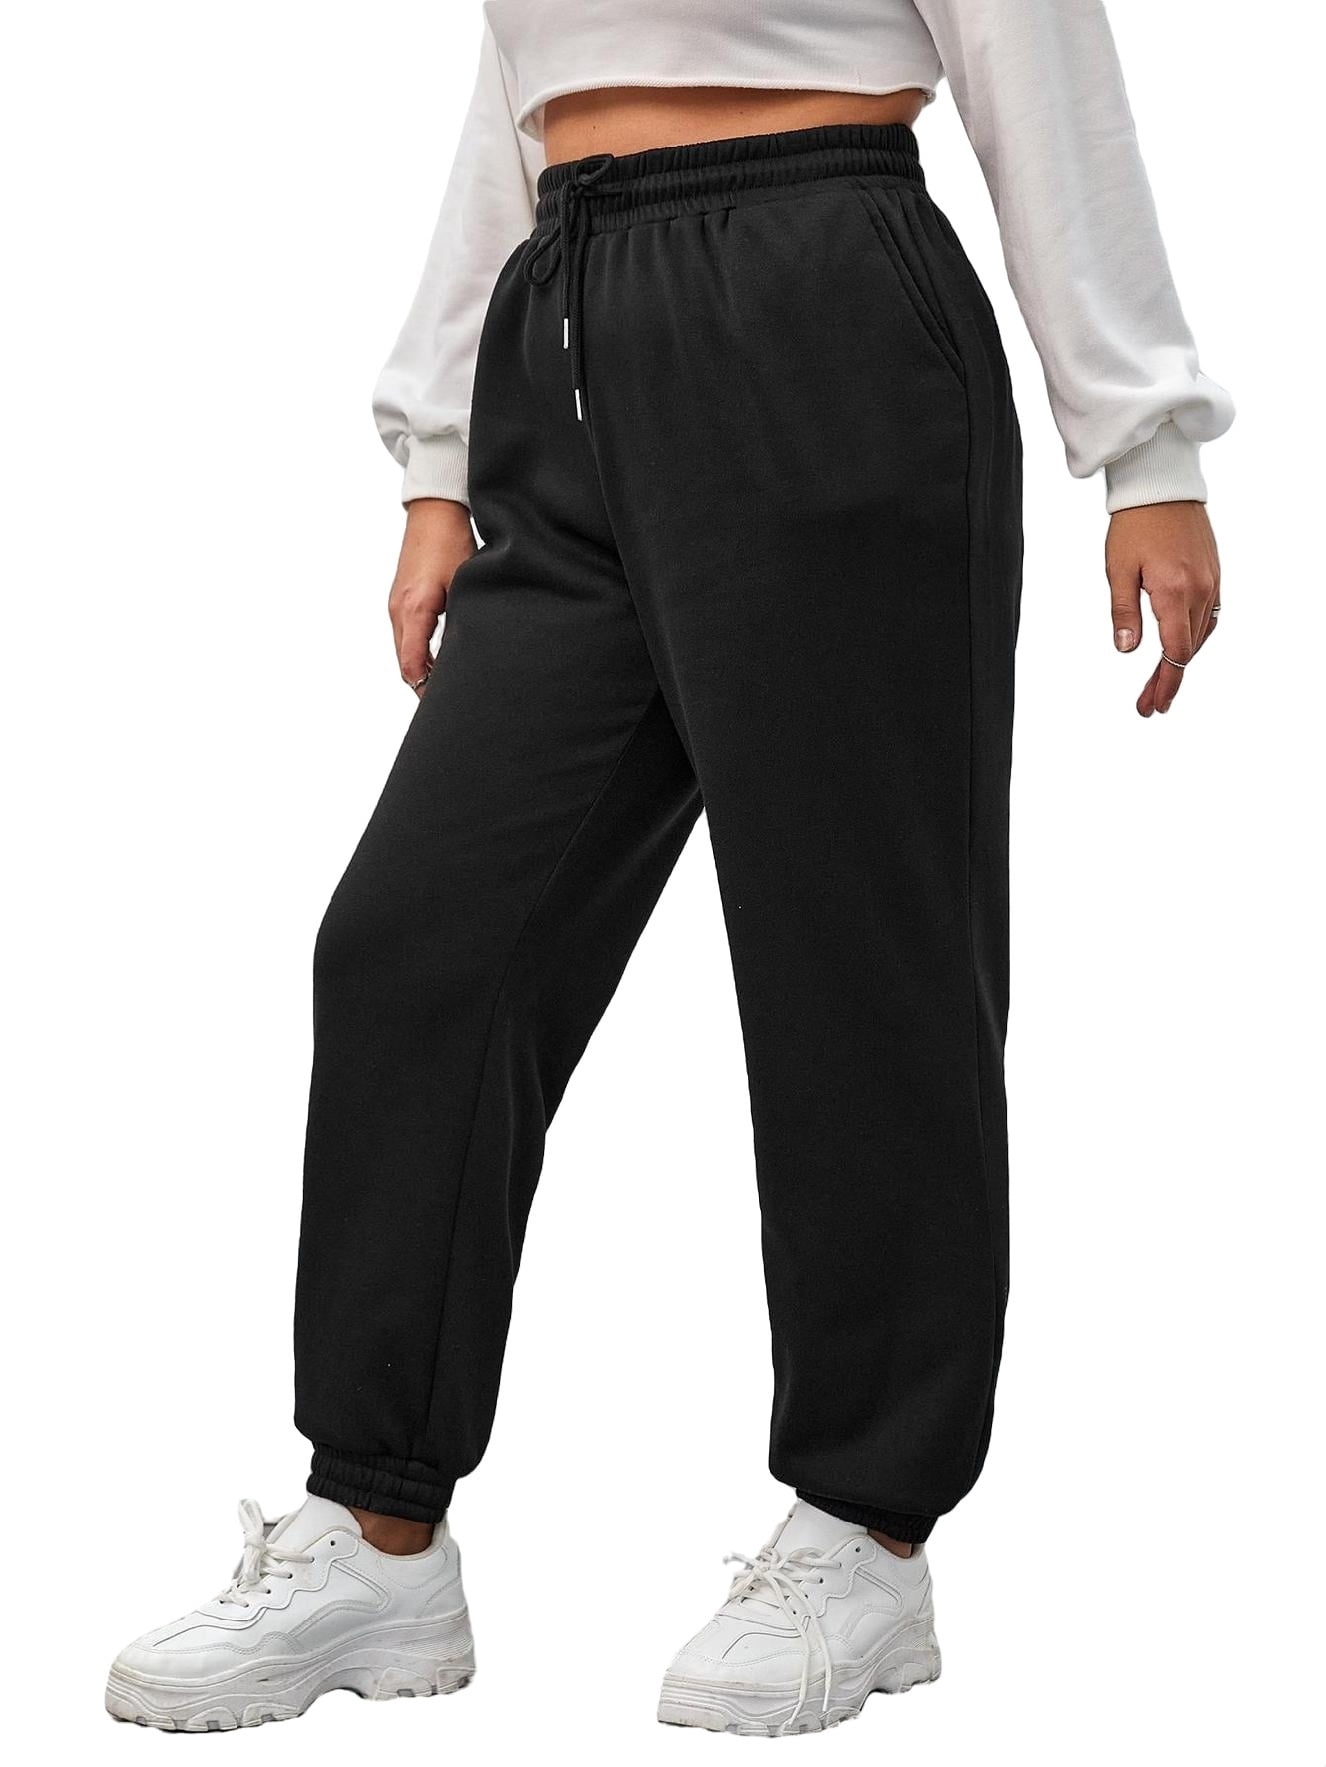 Solid Black Plus Size Sweatpants (Women's) - Walmart.com